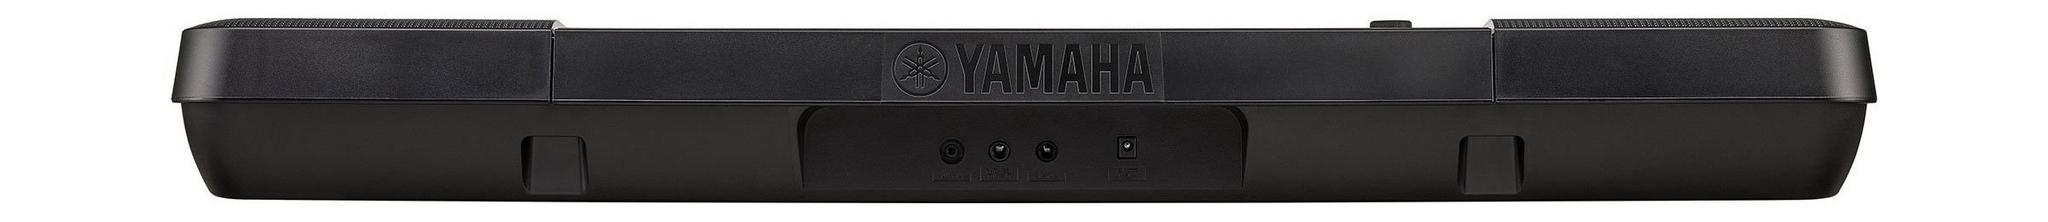 Yamaha Musical Keyboard 61 Keys (PSR-E263)